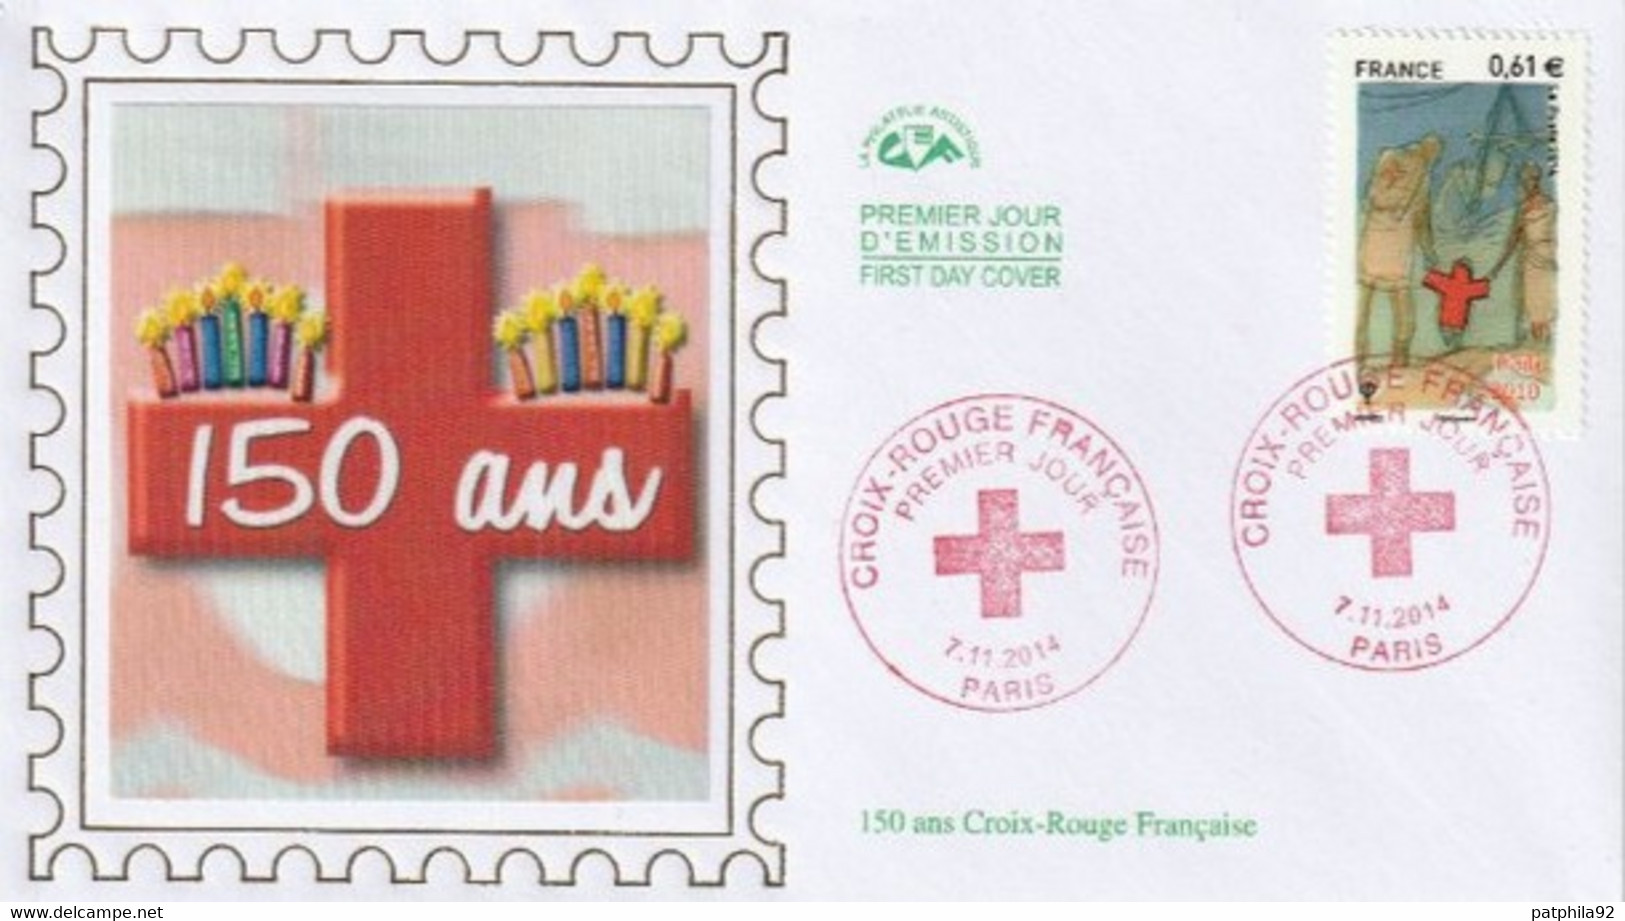 FRANCE 2014_Envel. 1er Jour_fdc_soie_Croix-Rouge (4914). PJ Paris 7/11/14. - 2010-2019